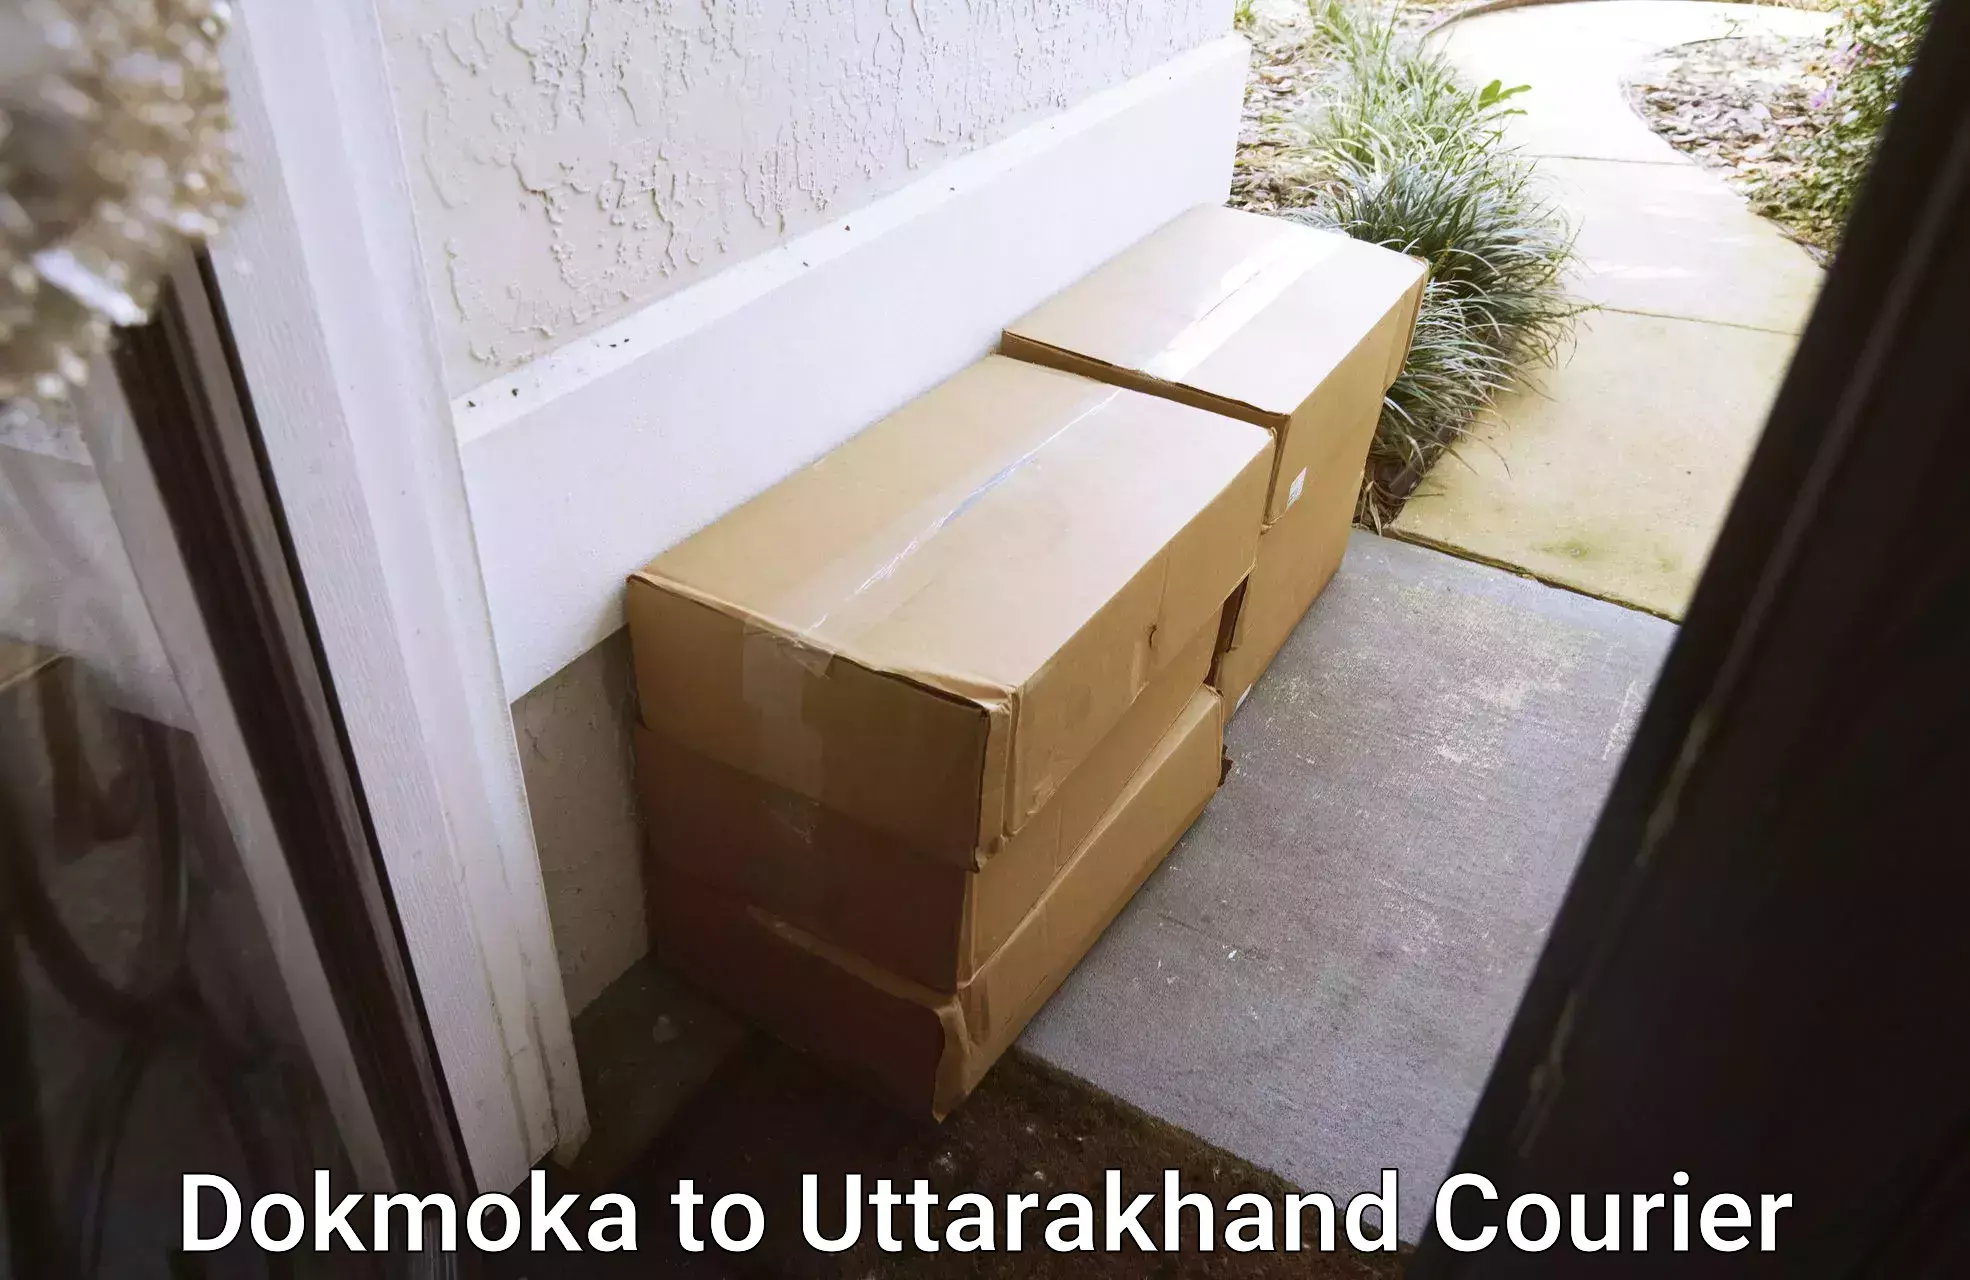 24-hour courier service Dokmoka to Uttarakhand